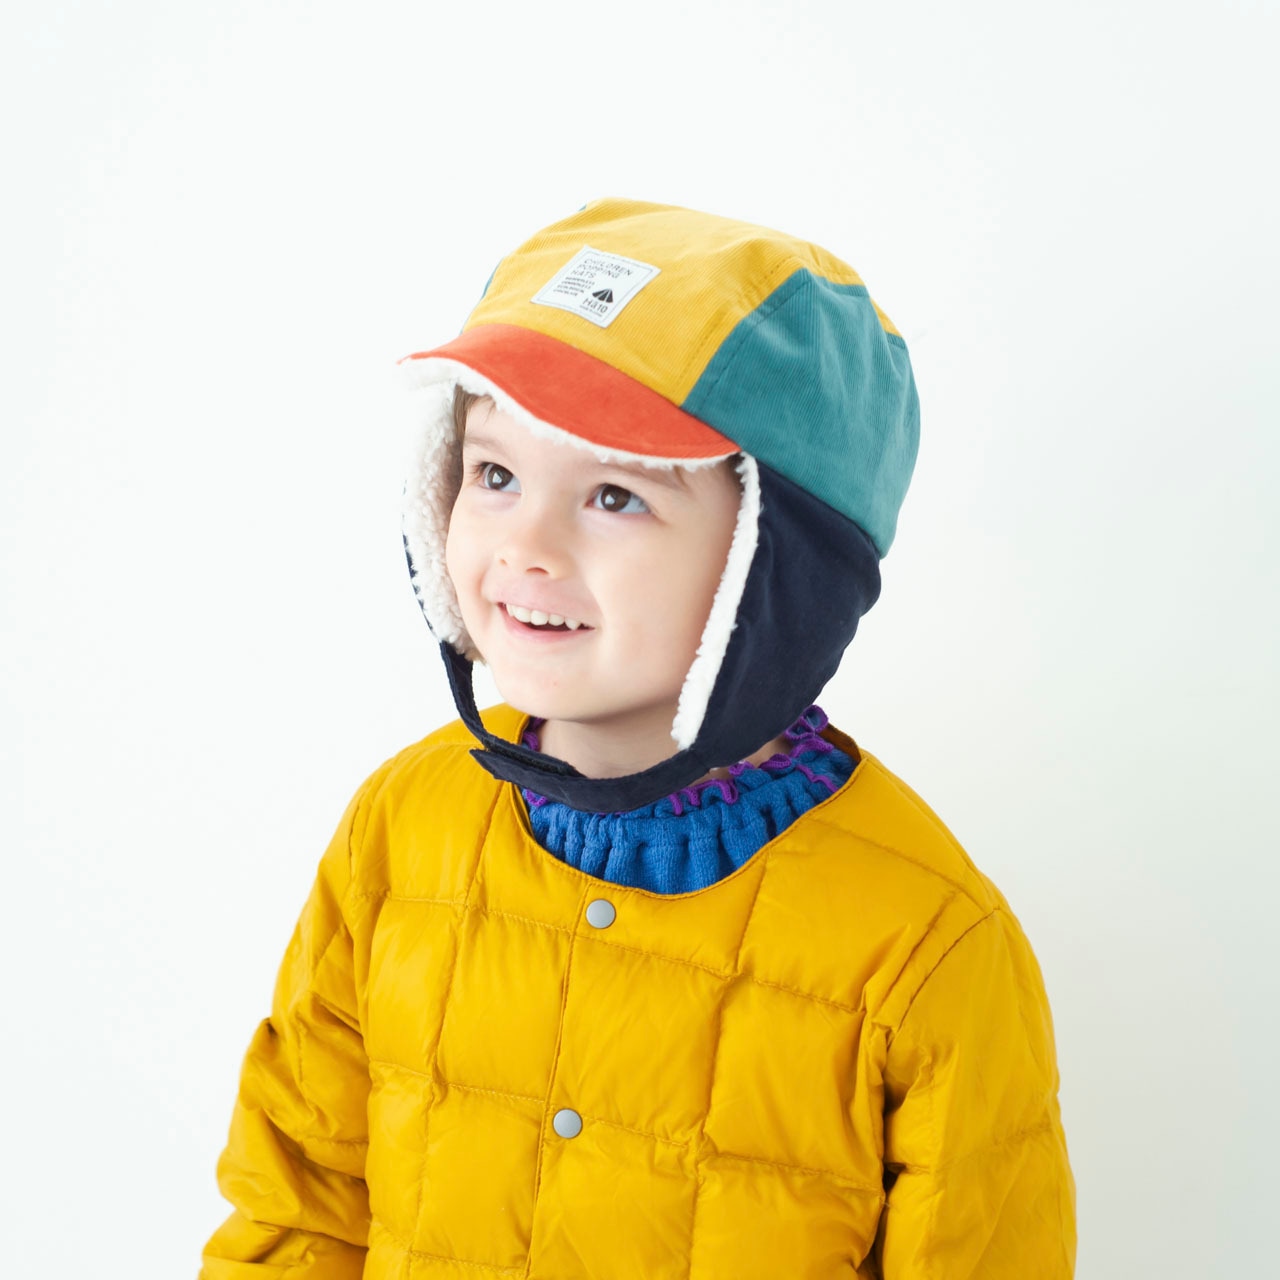 パイロットキャップ【マルチオレンジ】ブランド 子供 帽子 男の子 女の子 日本製 冬 キッズ ギフト